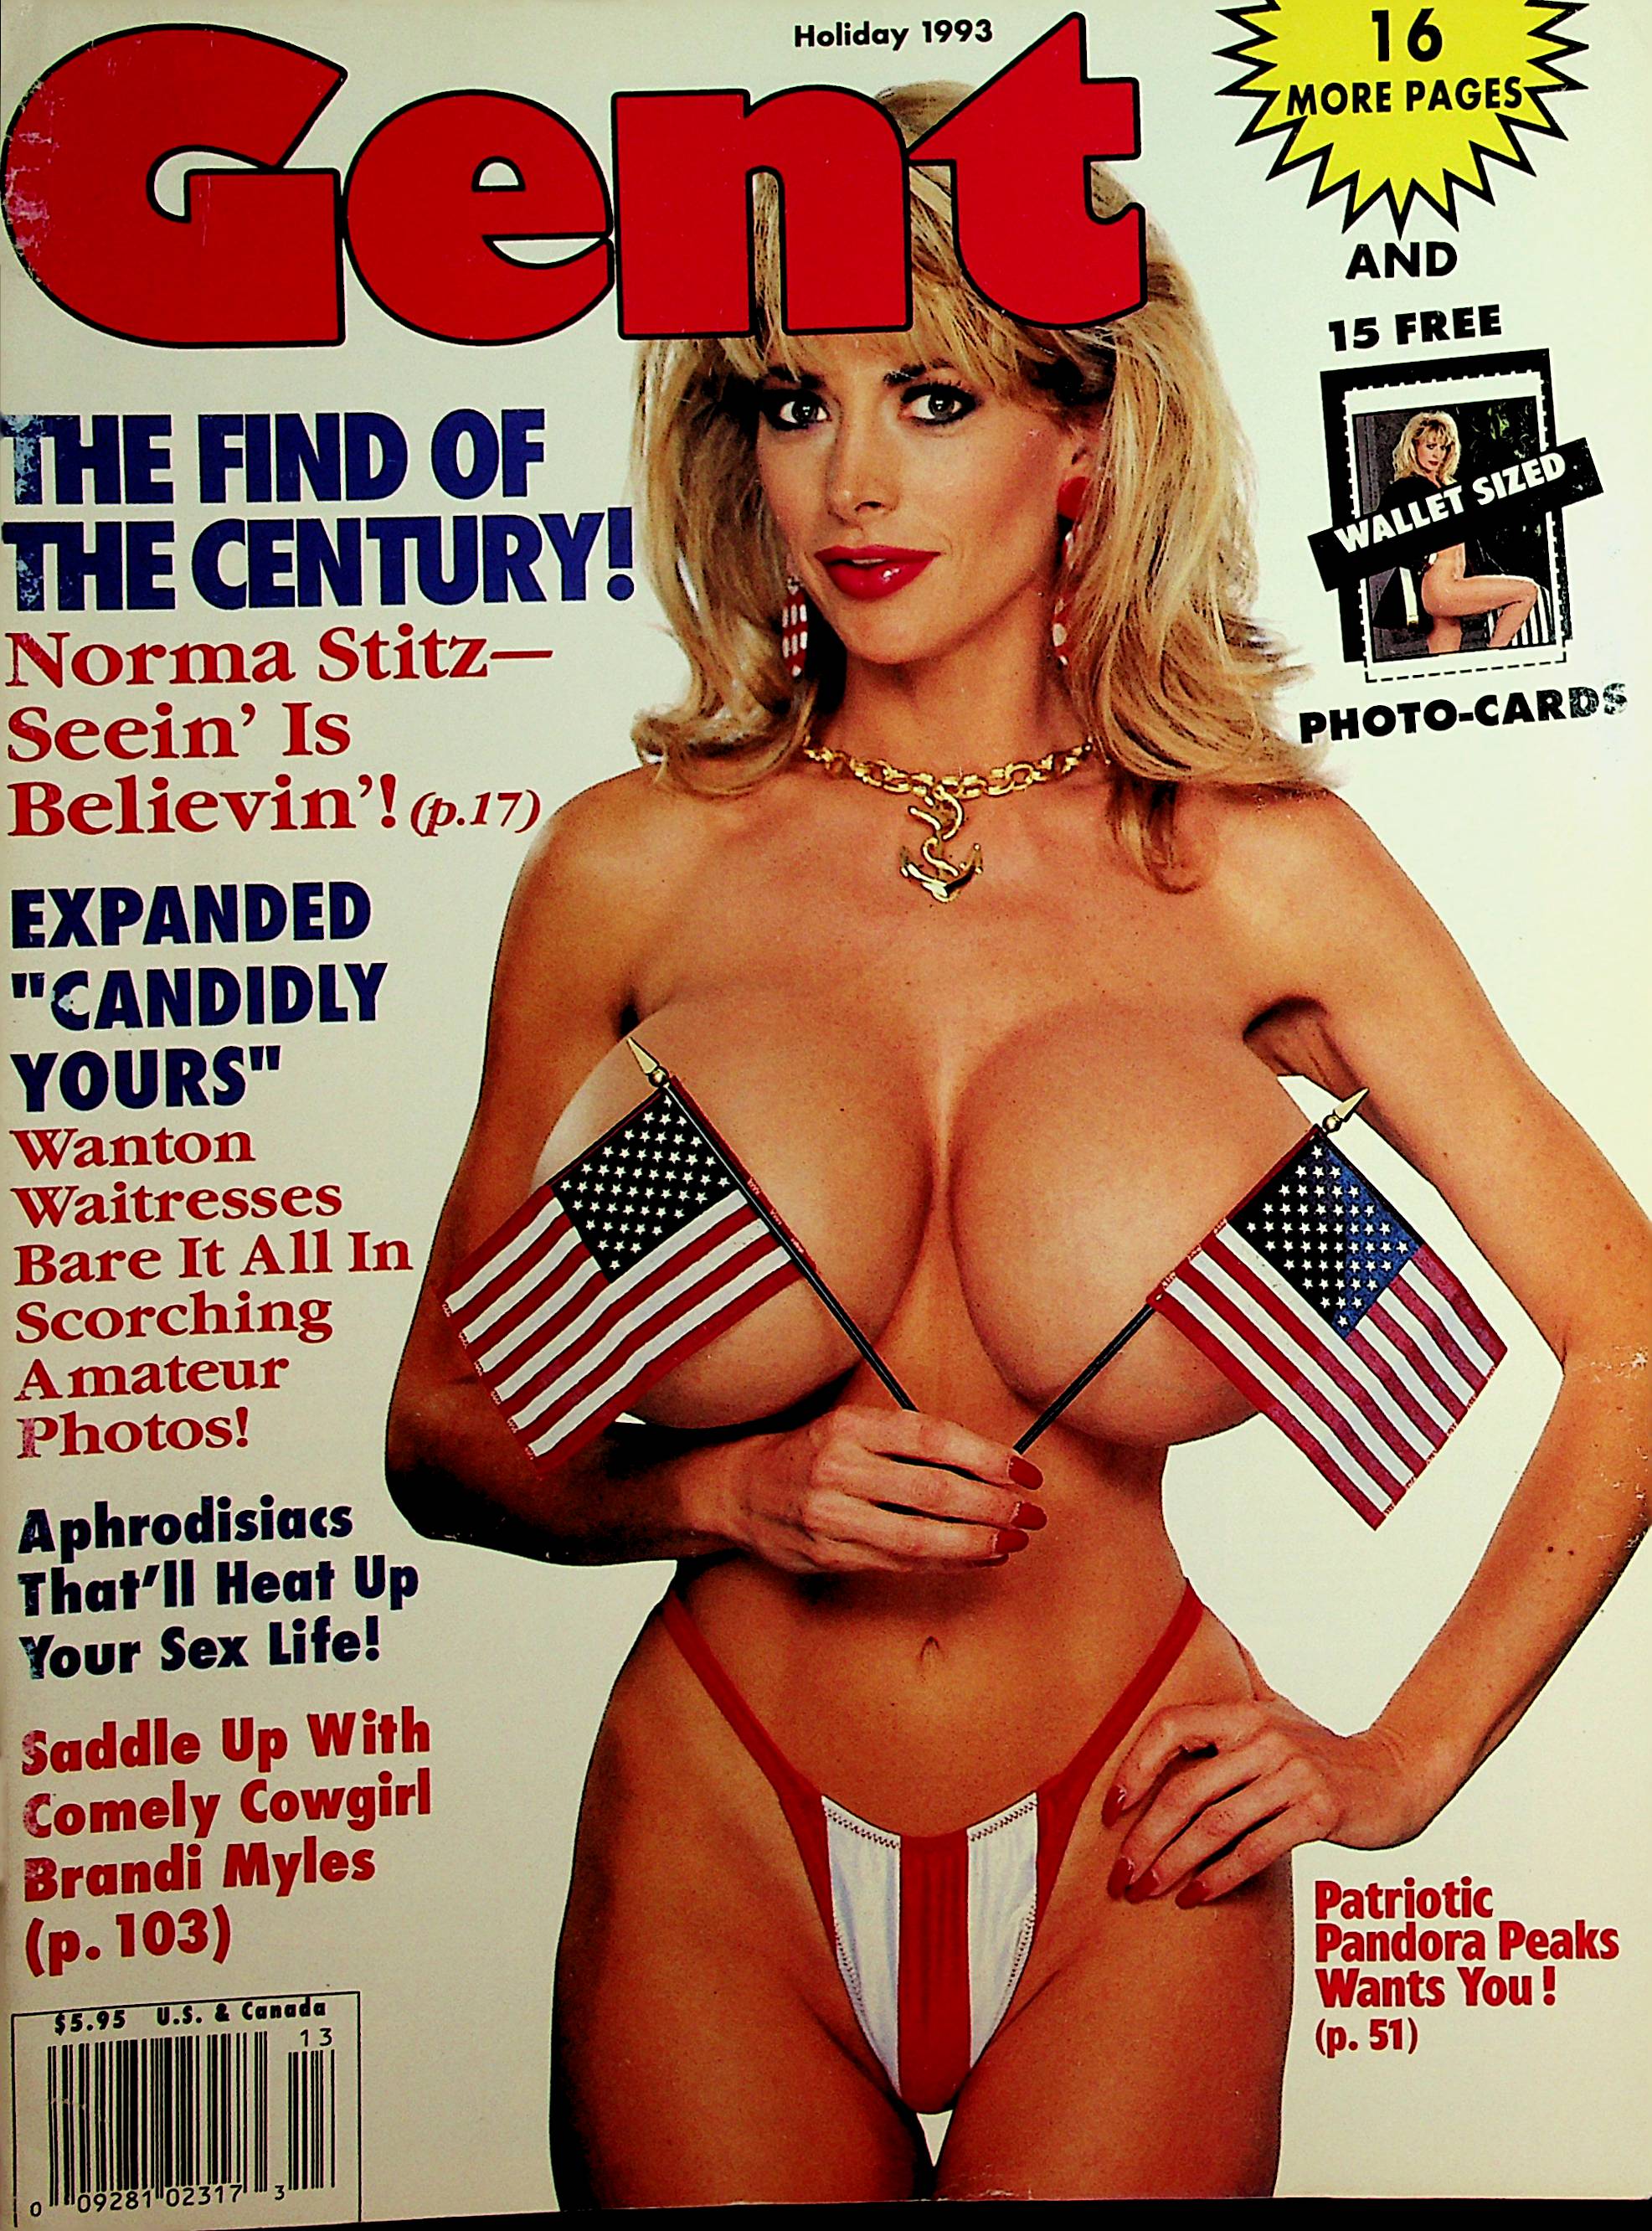 Gent Busty Magazine Pandora Peaks / Norma Stitz Holiday 1993 101421lm- photo image